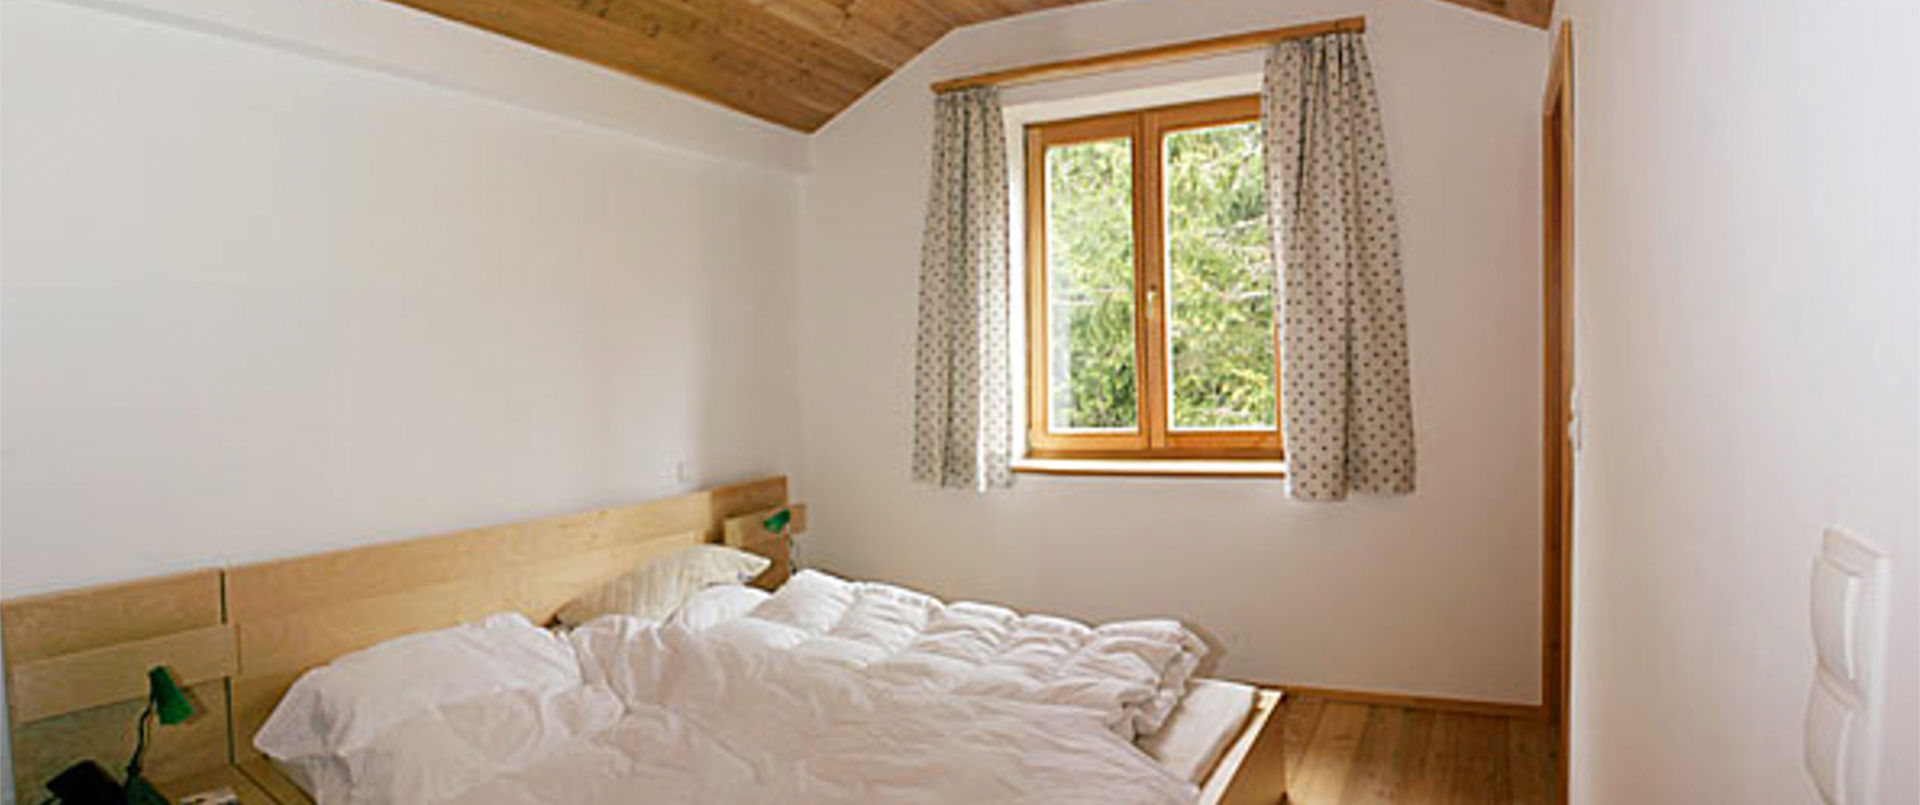 Ein Schlafzimmer der Wohnung2 im ersten Stock des Ferienhaus Meilinger in Obertauern